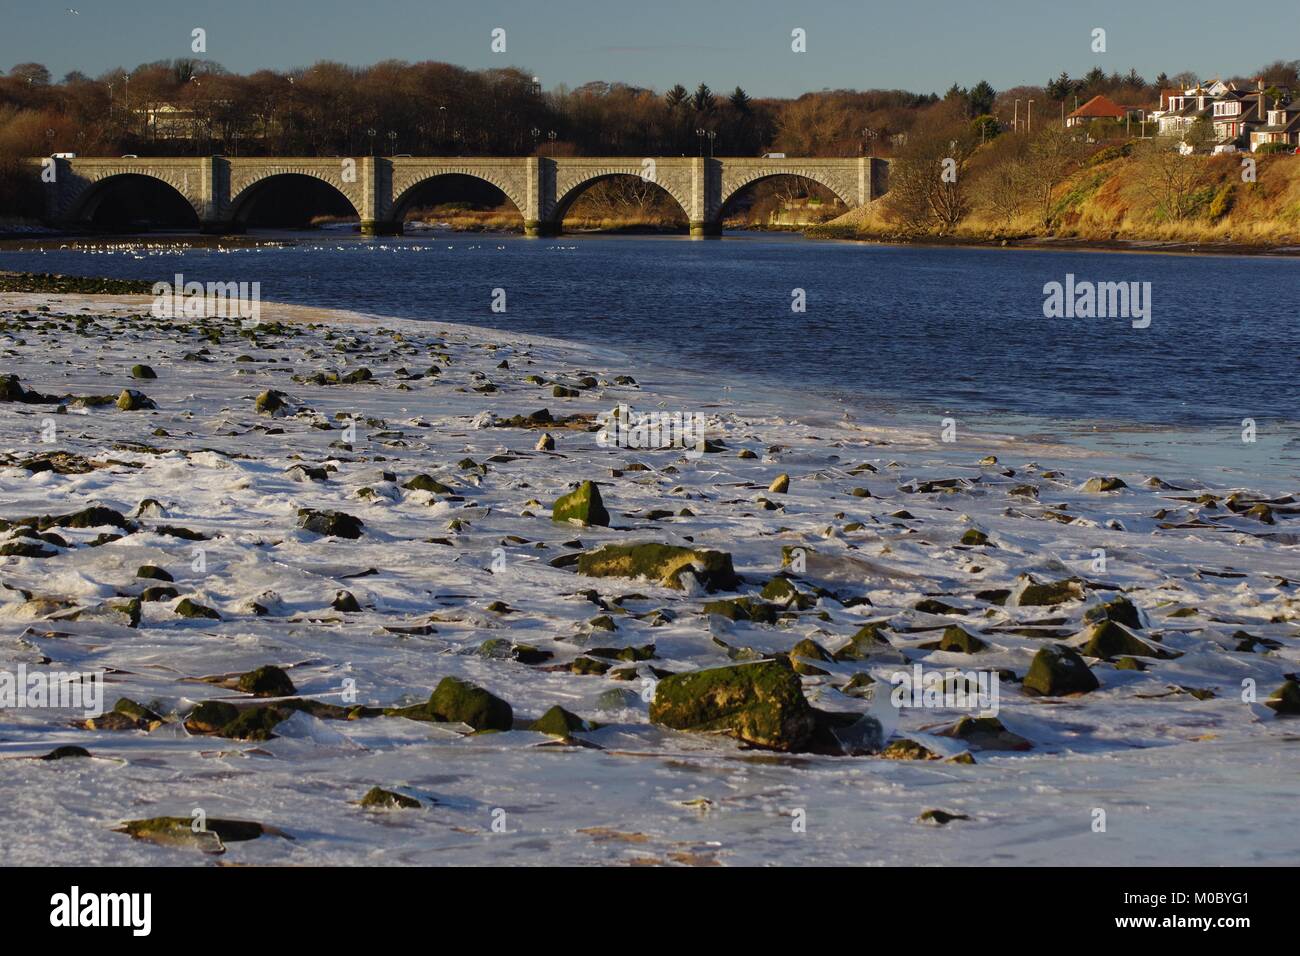 Puente de don. 5 arco de granito puente de carretera 1830, abarcando thr Río Don en Donmouth. Aberdeen, Escocia, Reino Unido. Foto de stock